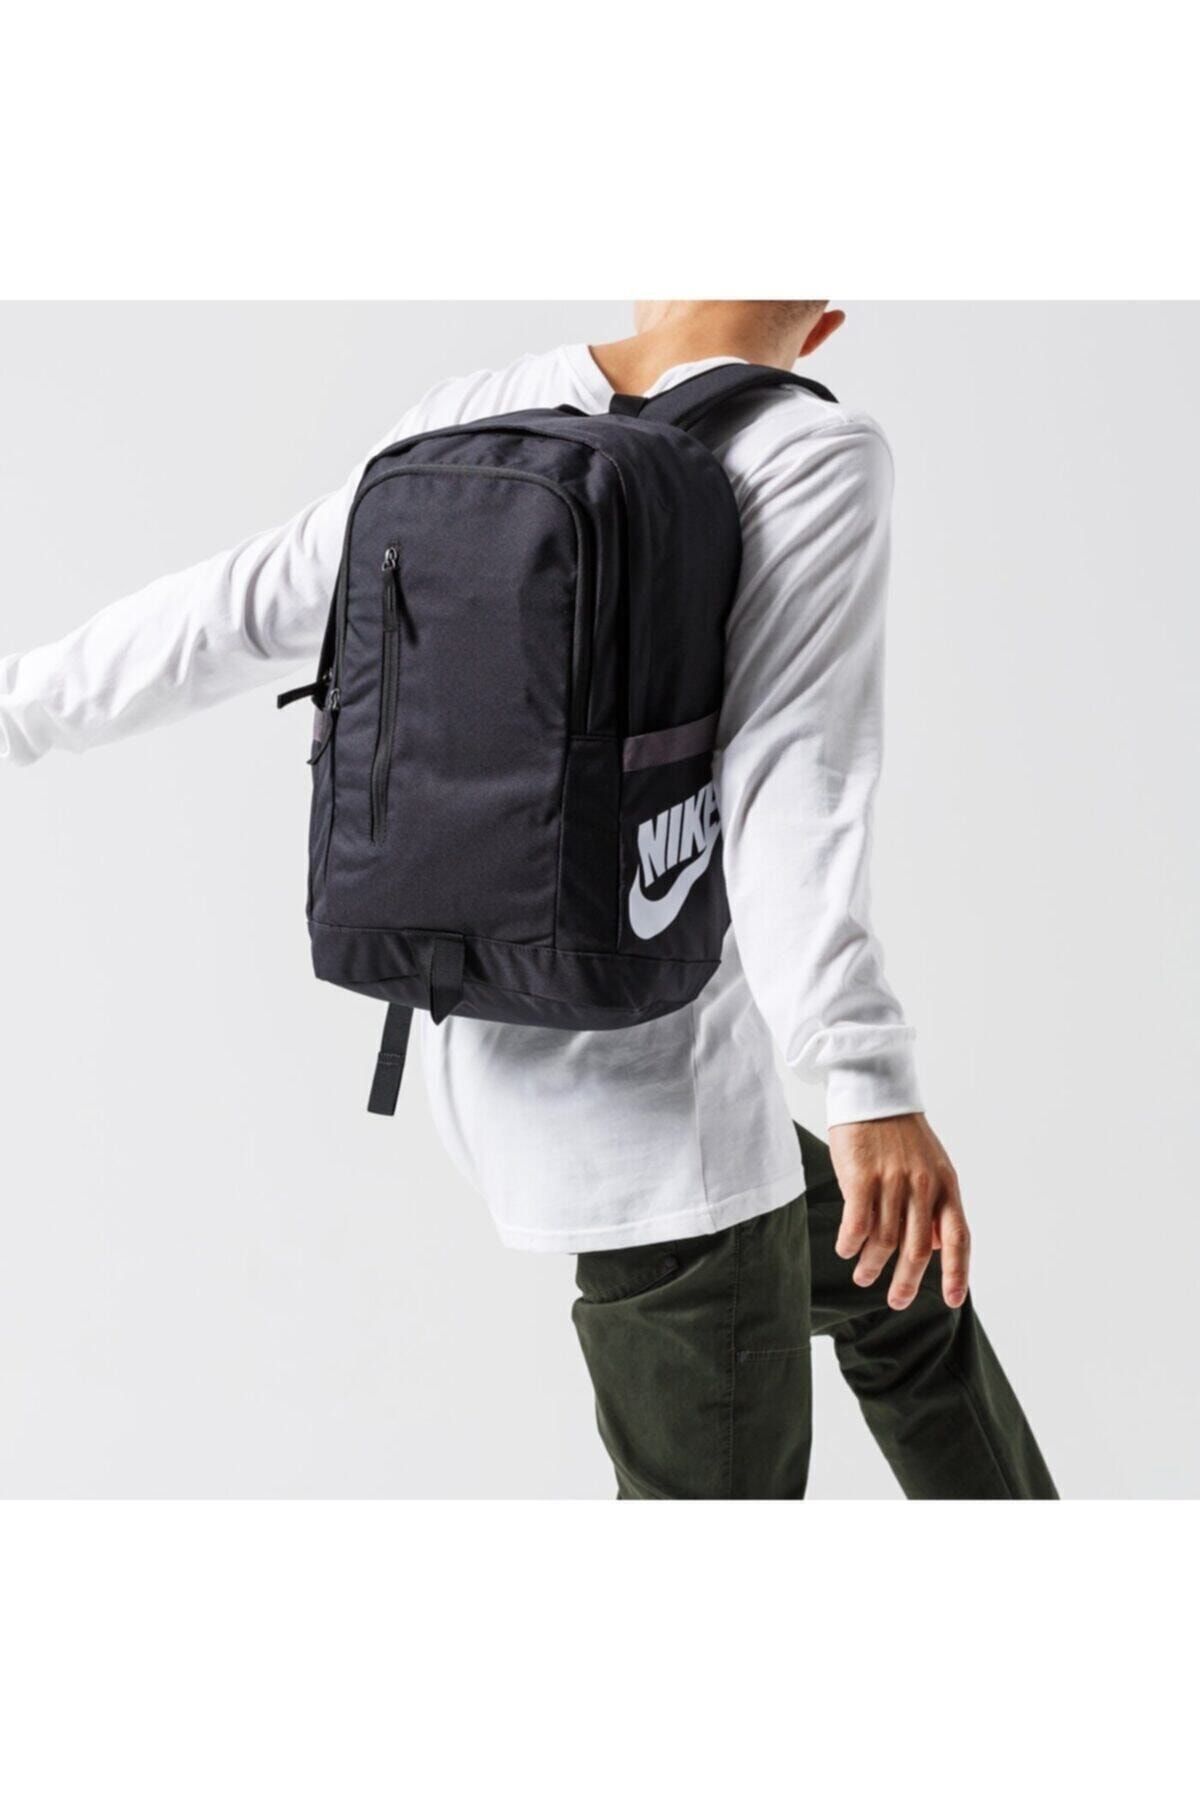 Respectivamente Hazme Mercado Nike All Access Soleday Sırt Çantası Siyah Backpack Ba6103-013 Fiyatı -  Trendyol